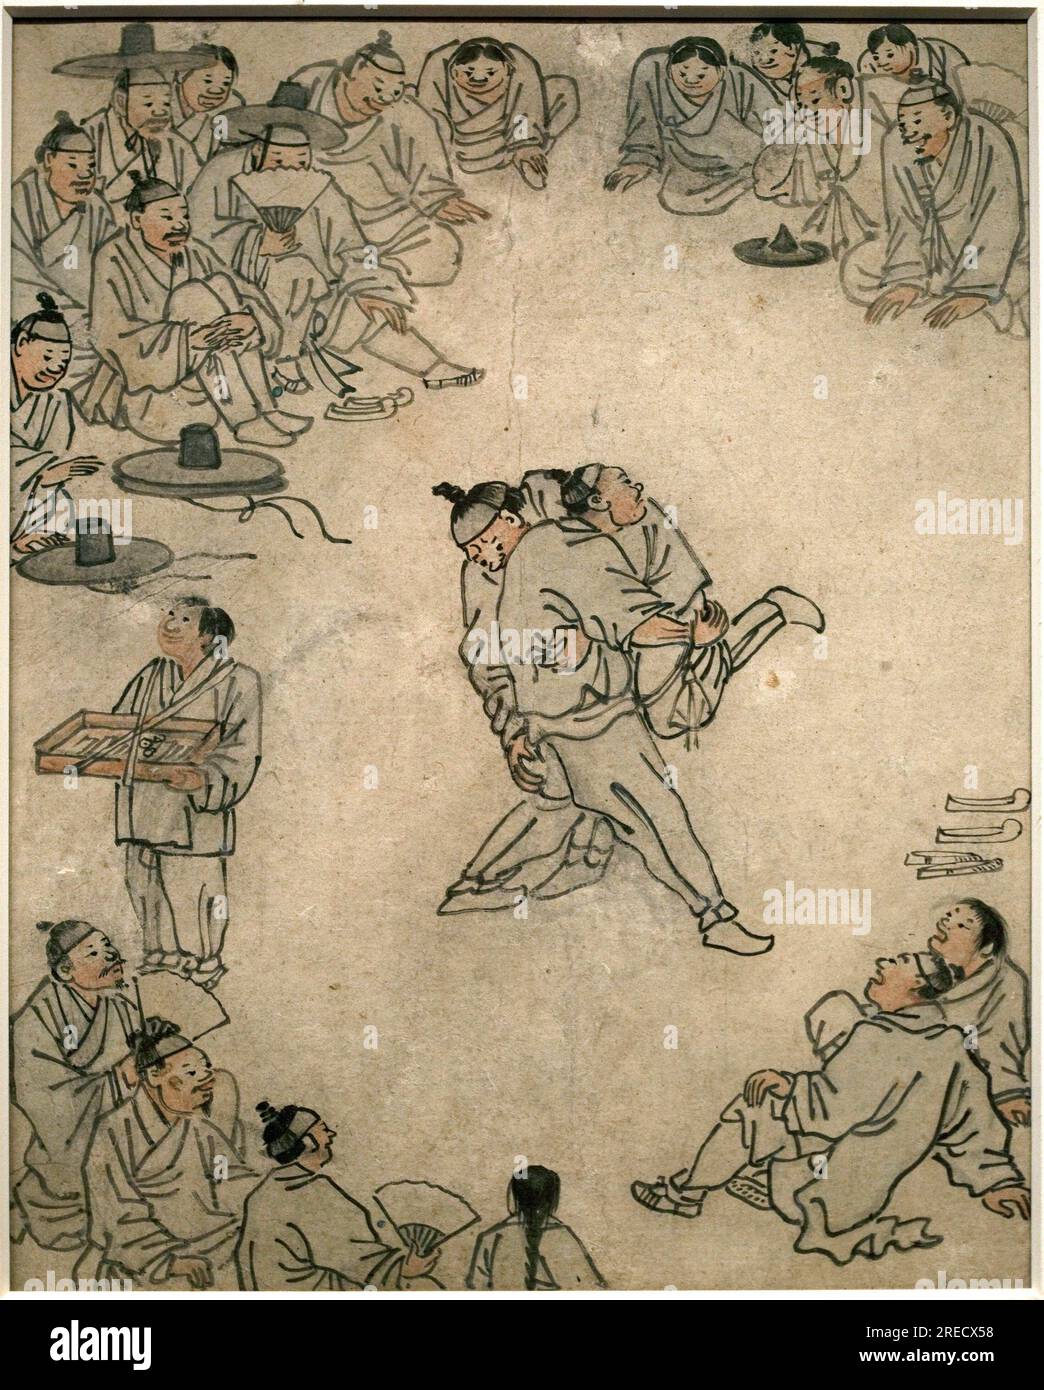 Scene de lutte traditionnelle, avec spectateurs et un vendeur de confiseries. Peinture de Danwon (Kim Hongdo) (1745-1806), encre sur papier, art coreen, periode Joseon (Choson) 18e siecle. Musée National de Coree, Séoul (Coree du Sud). Banque D'Images